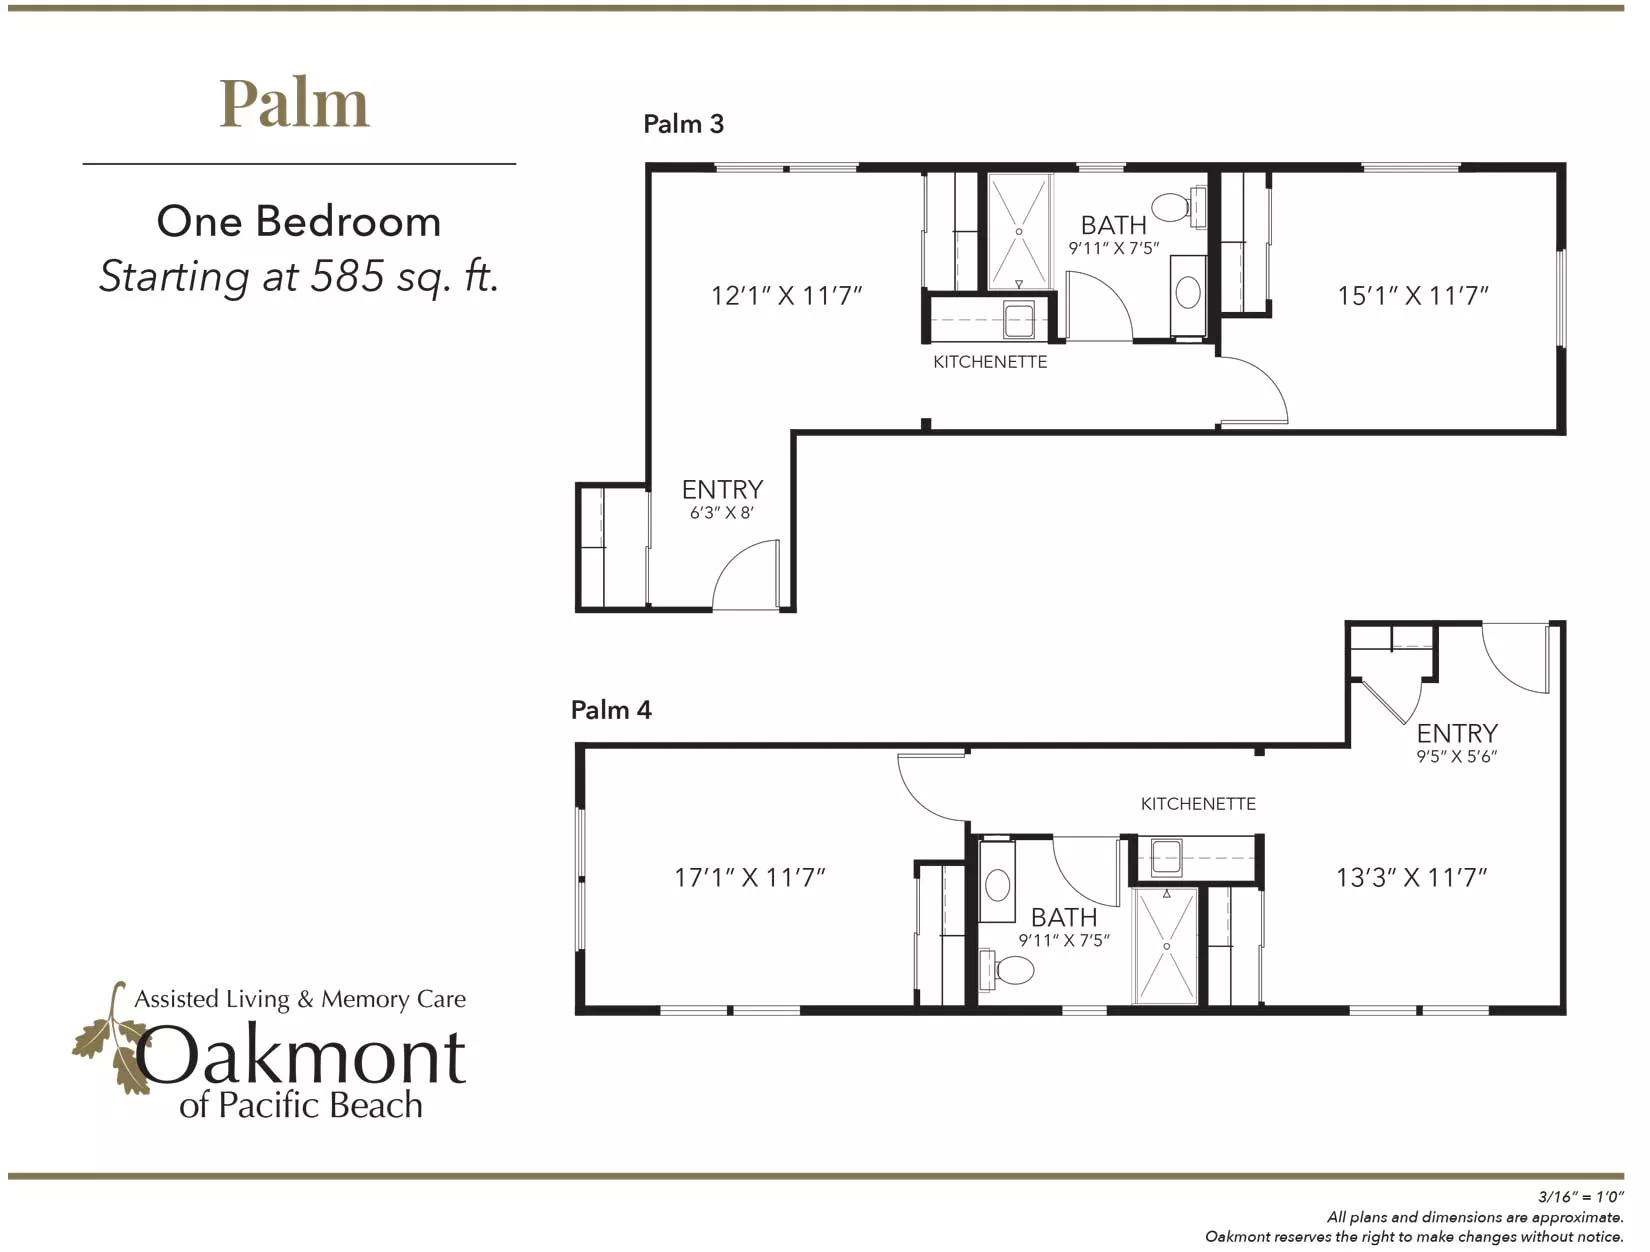 Palm 2 one bedroom floor plan